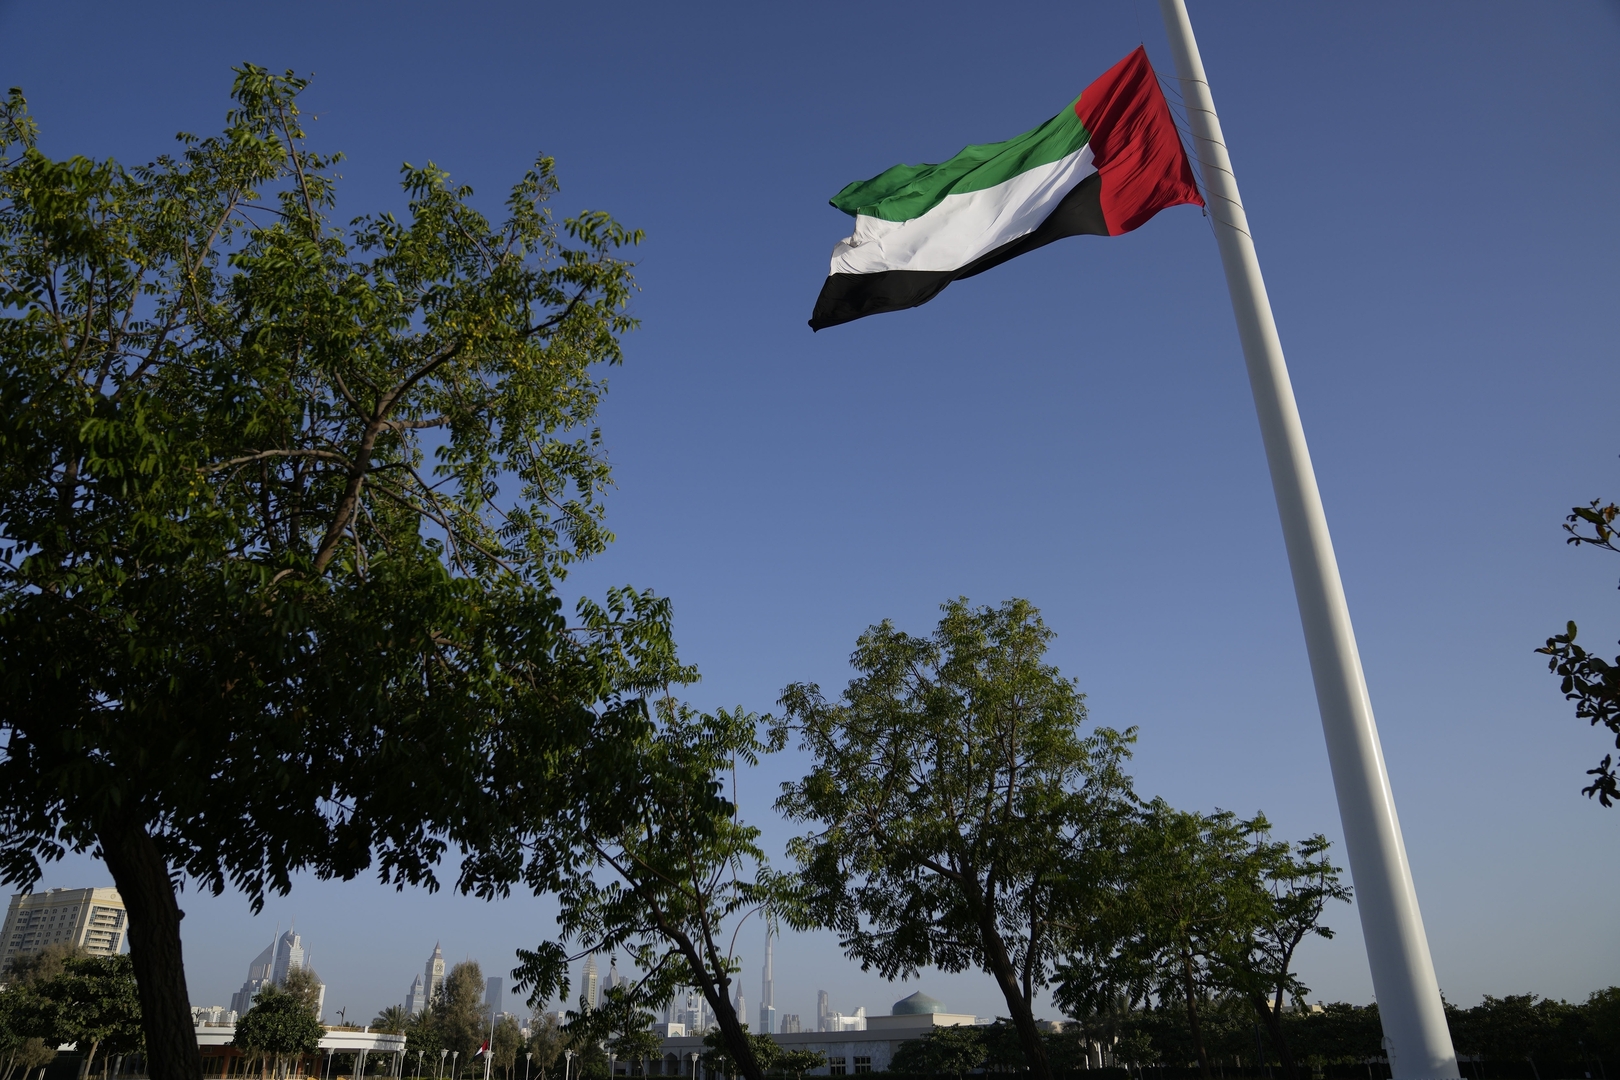 السفارة الإماراتية في الولايات المتحدة تصدر بيانا بشأن قضية محامي جمال خاشقجي السابق